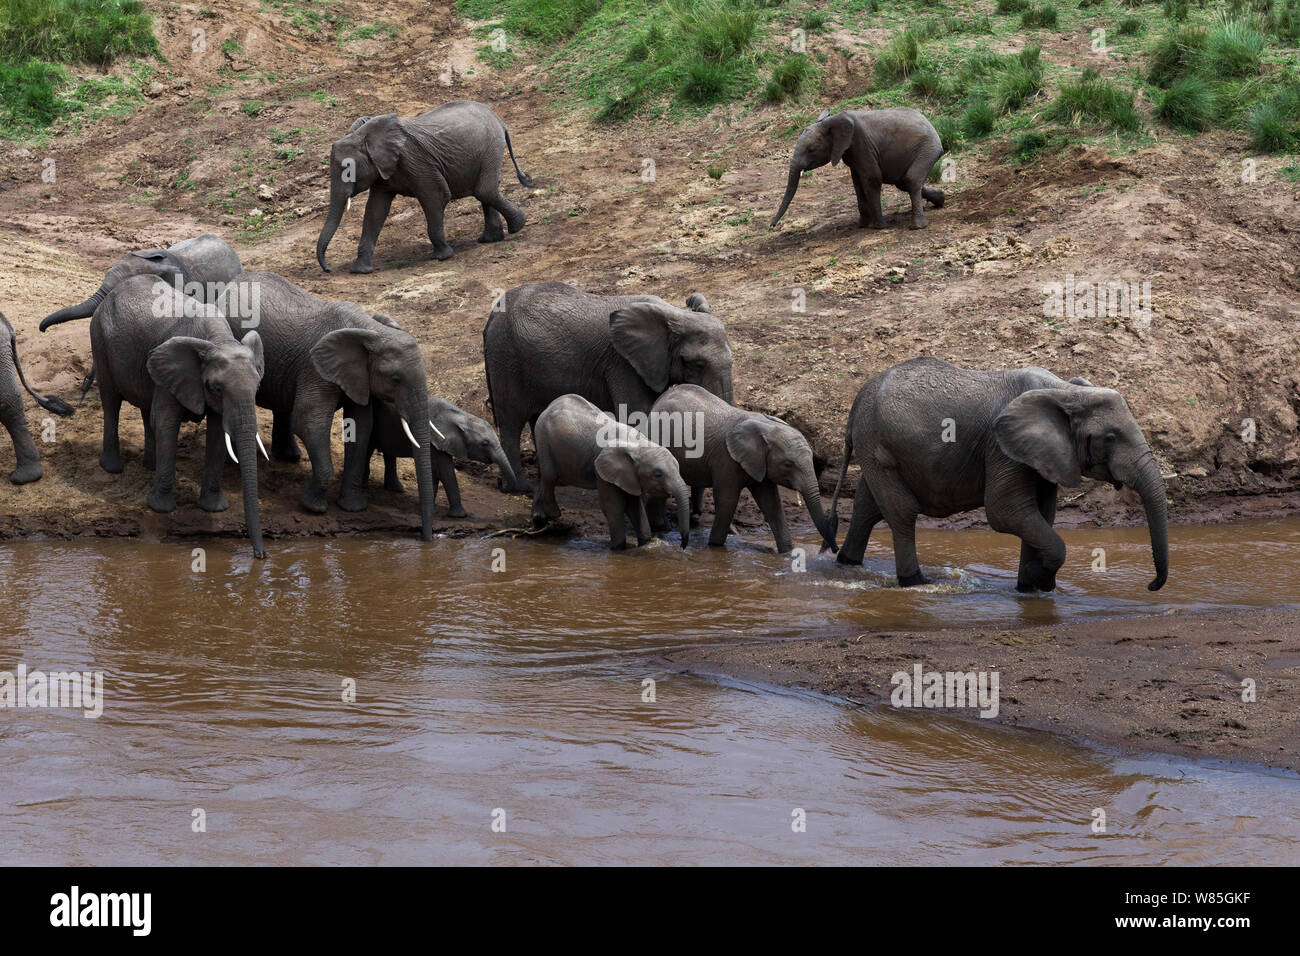 Les éléphants d'Afrique (Loxodonta africana) traverser la rivière Mara. Masai Mara National Reserve, Kenya. Banque D'Images